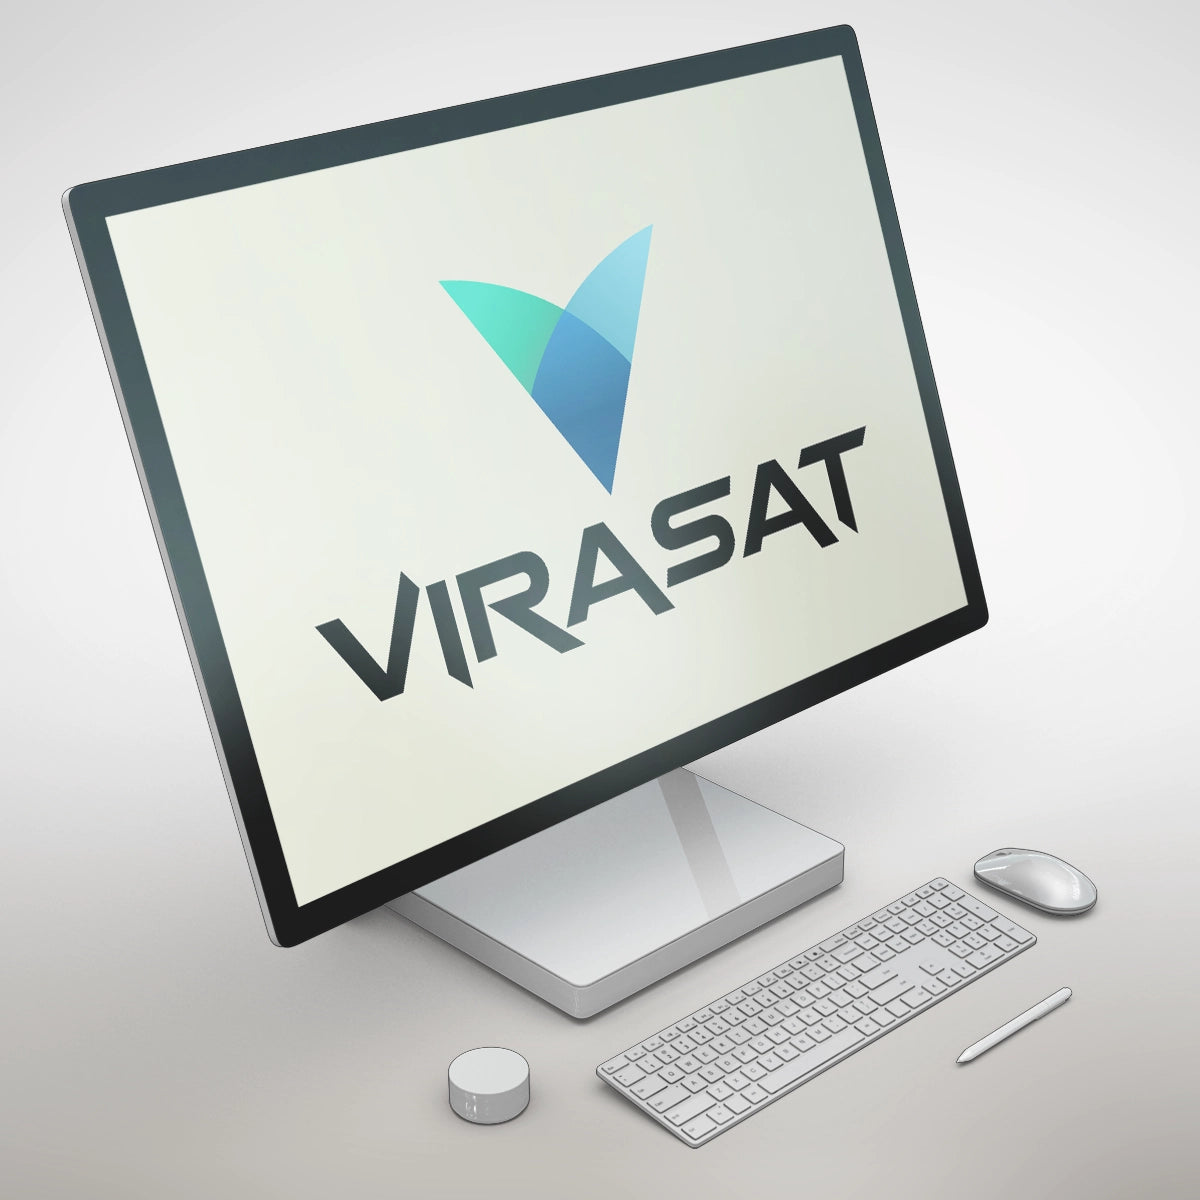 virasat.org